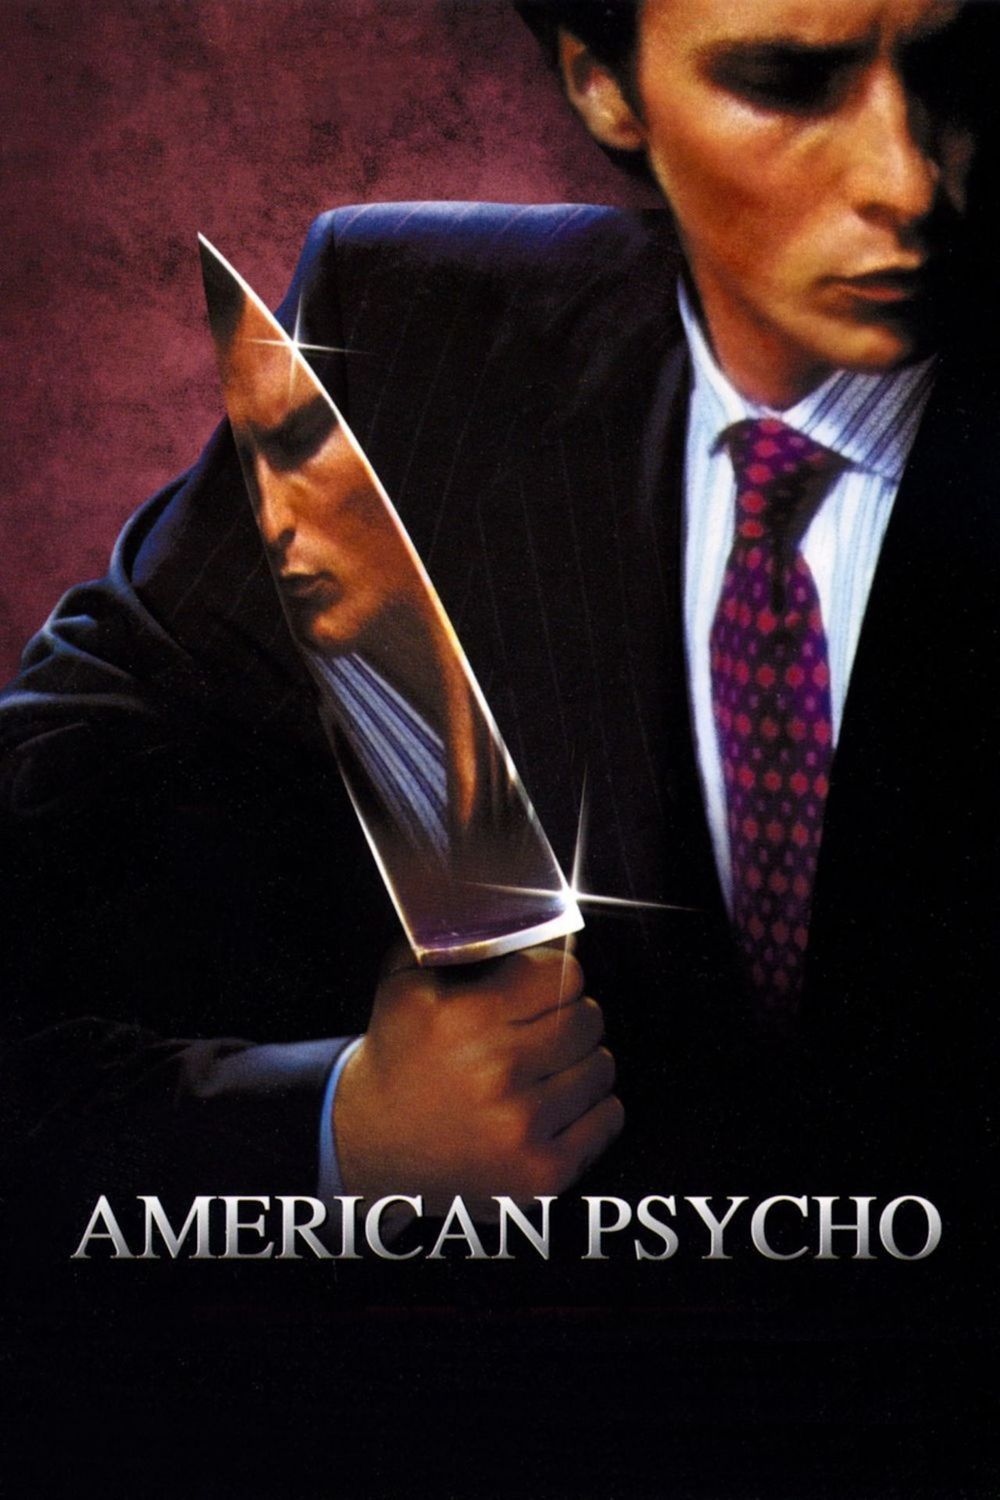 Stiahni si HD Filmy Americke psycho / American Psycho (2000)  = CSFD 68%